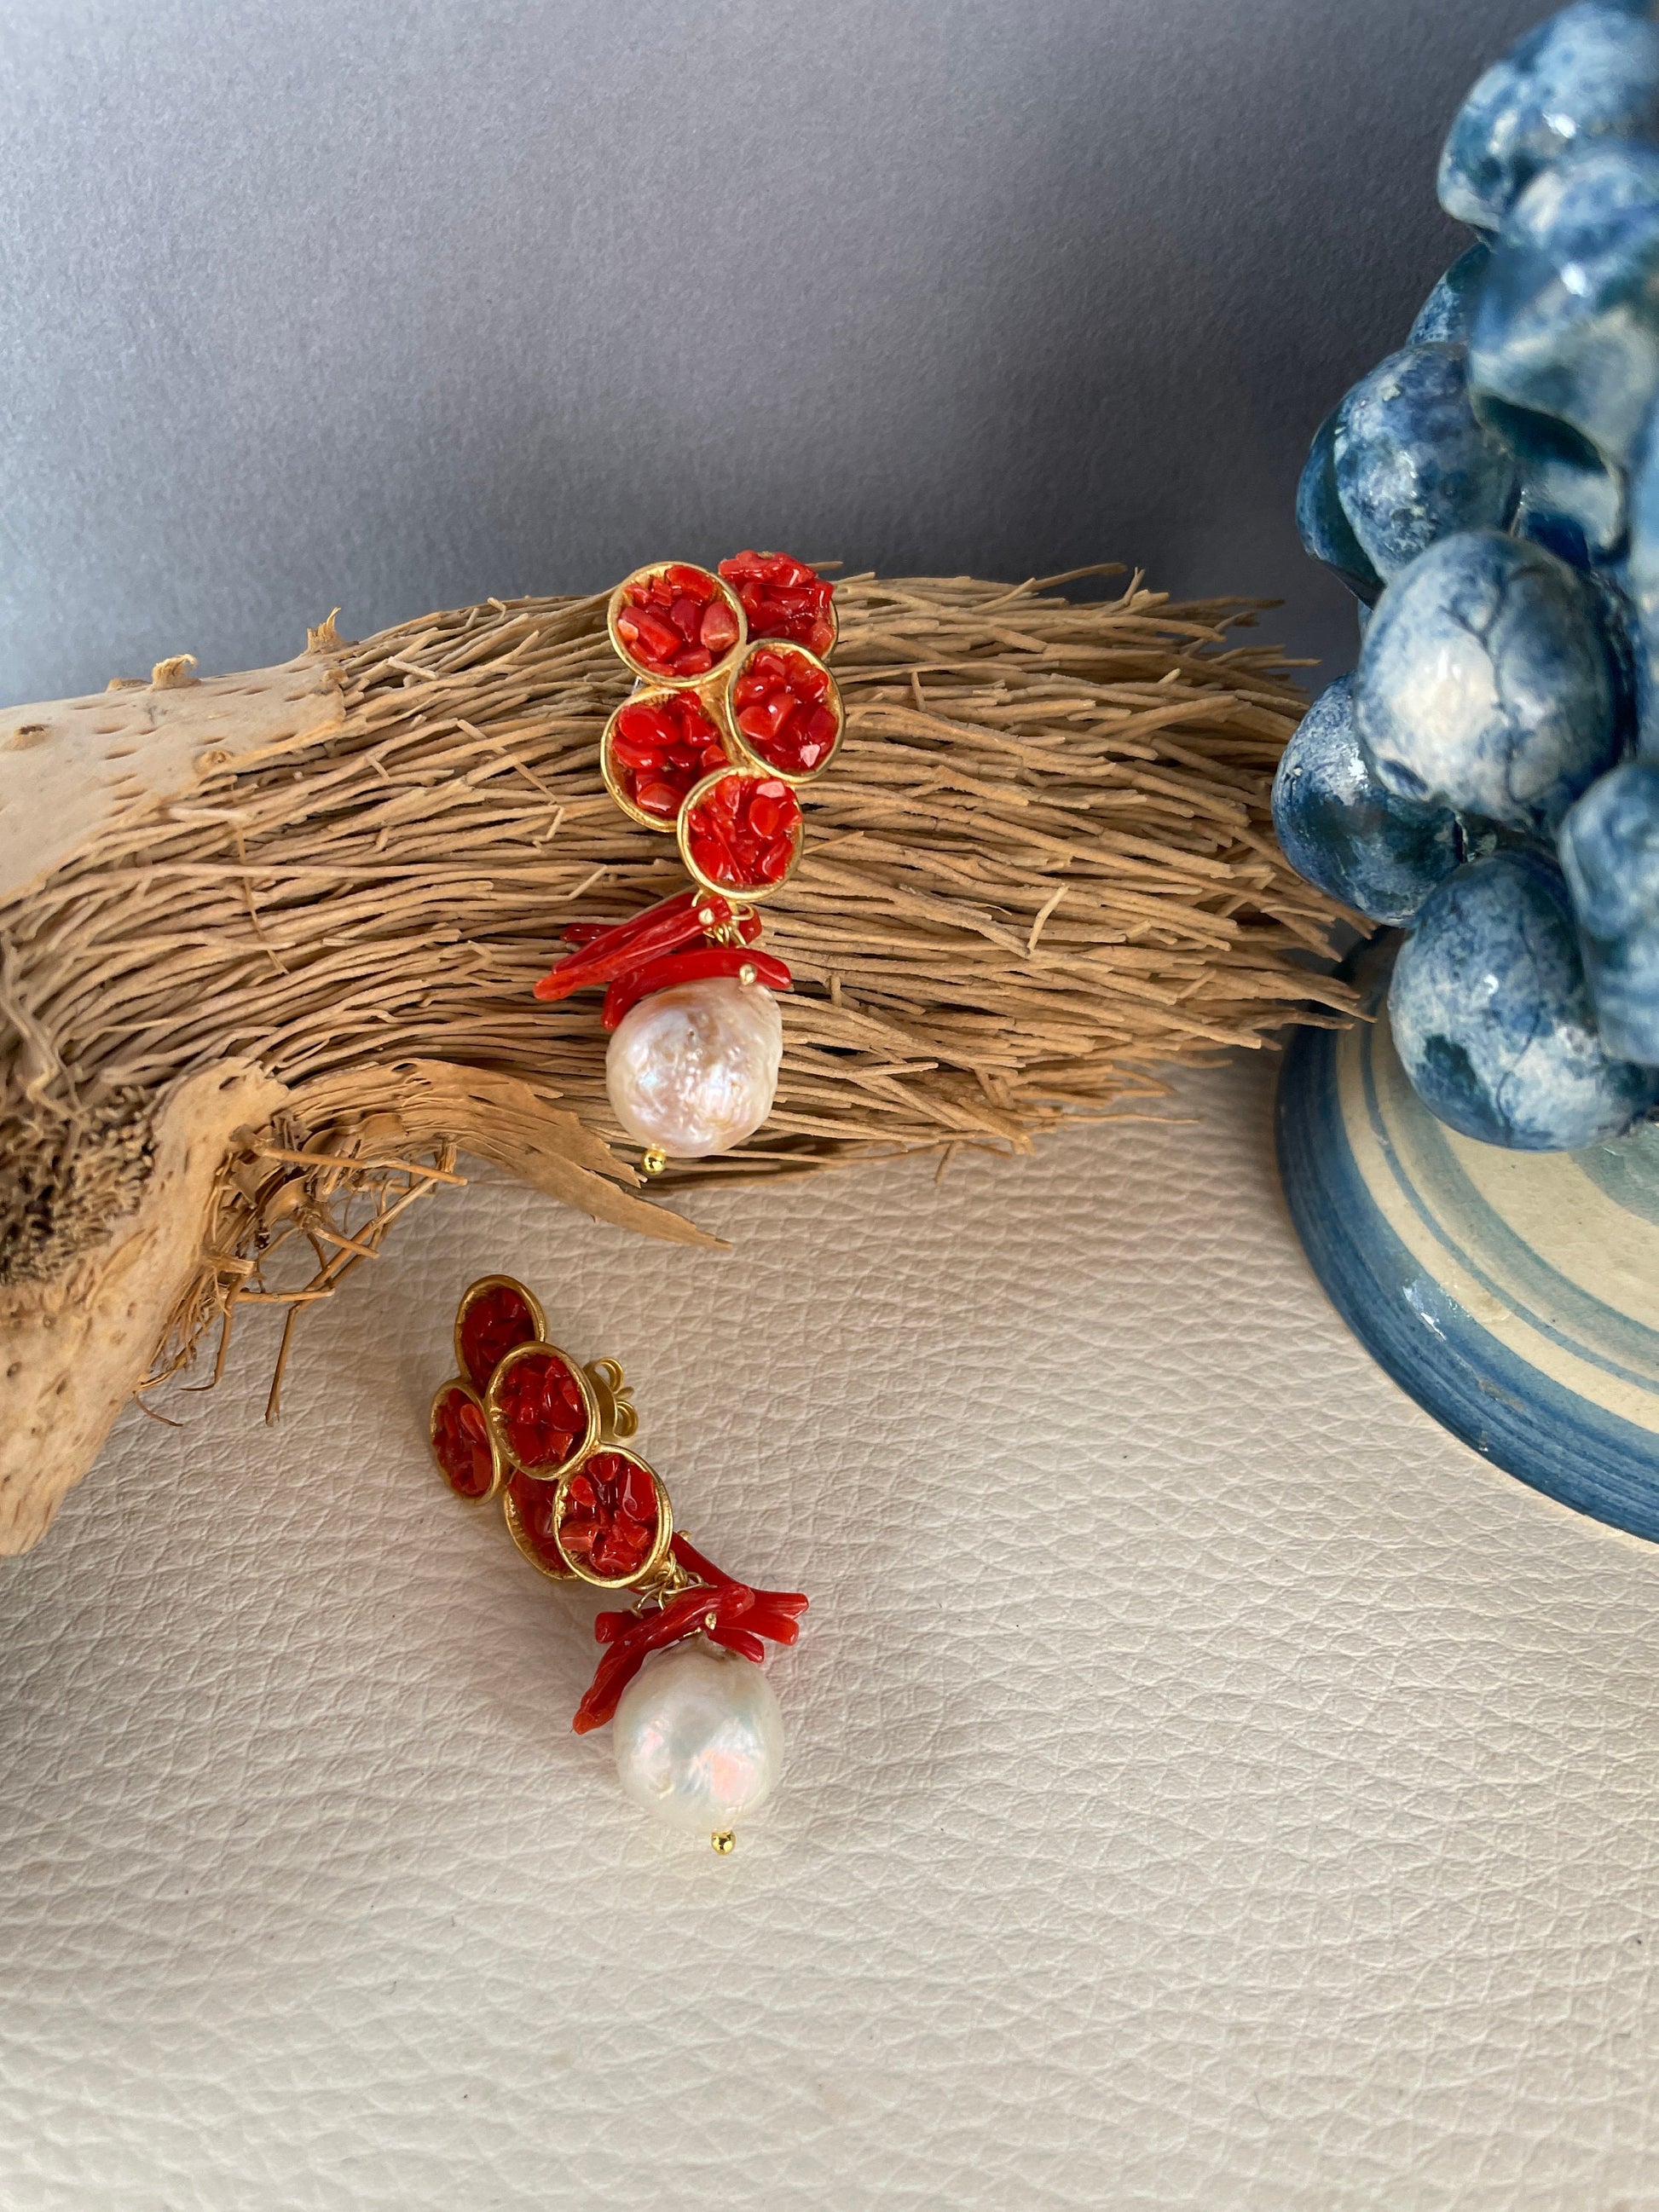 Orecchini da lobo con perno in zama oro e granella di Corallo rosso autentico, perle barocche e rami di corallo.§